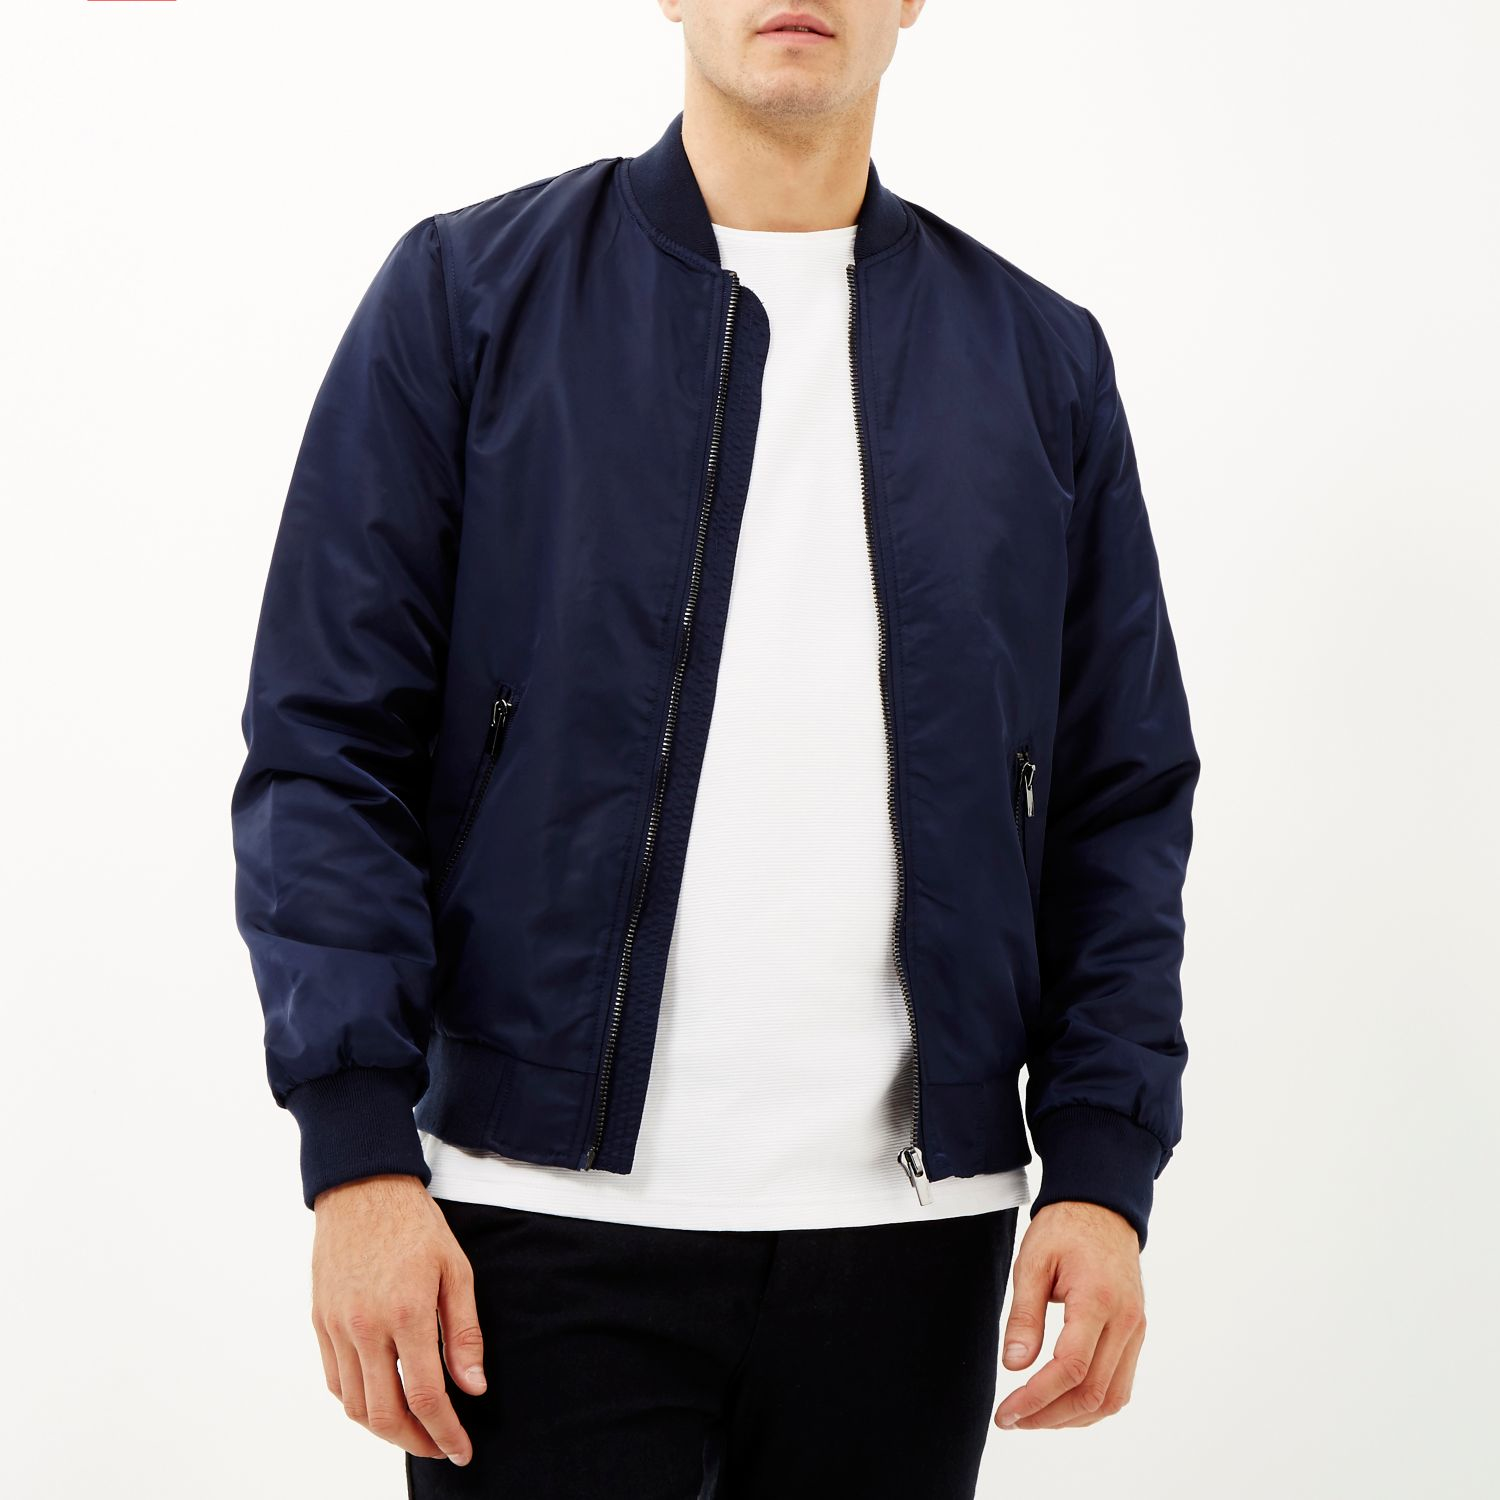 Navy blue leather bomber jacket – Modern fashion jacket photo blog